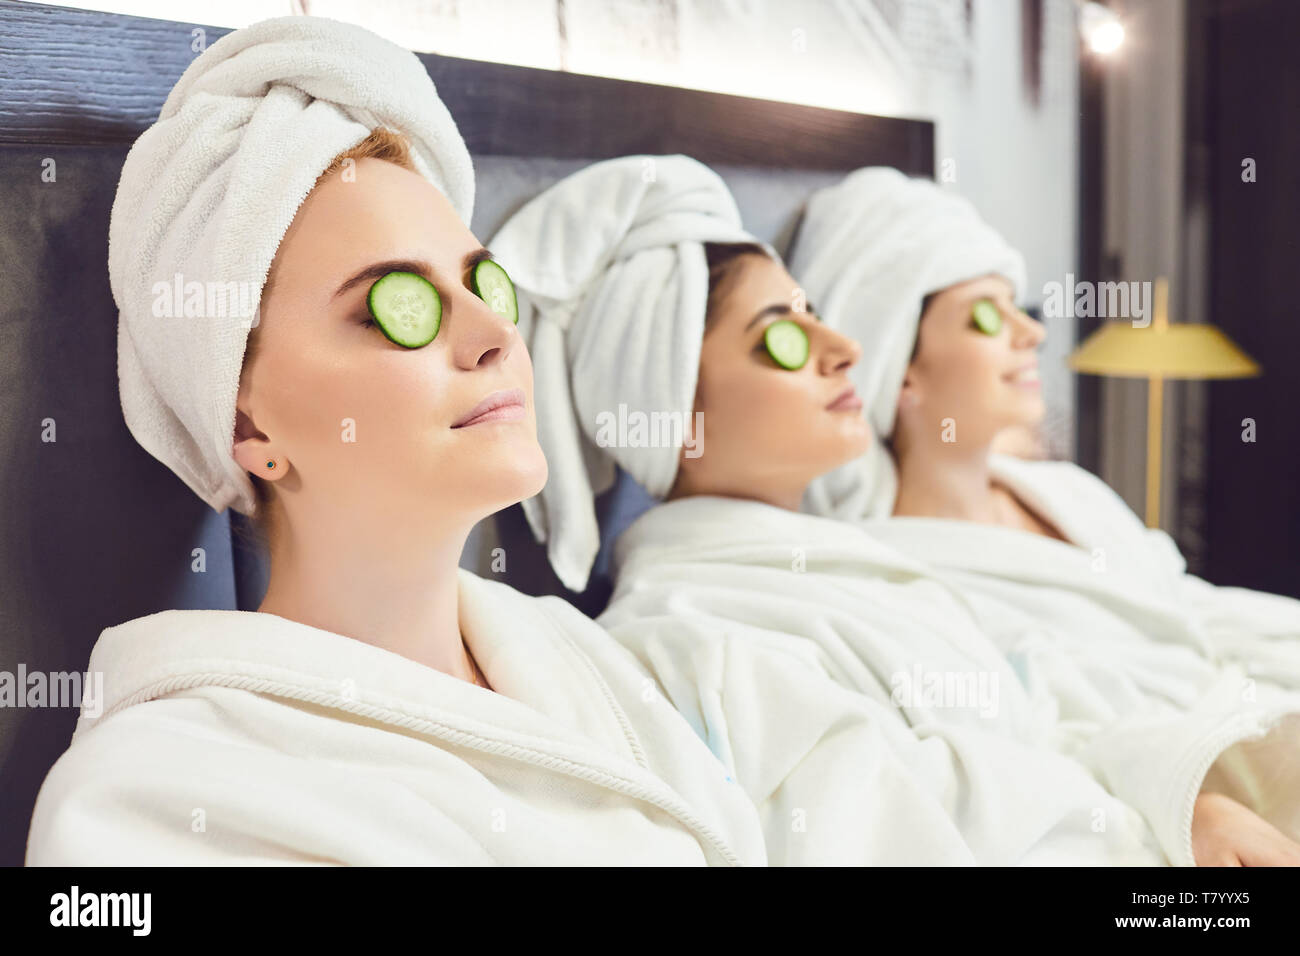 Kuehlung Frauen in Bademäntel mit Gurkenscheiben auf dem Gesicht Stockfoto